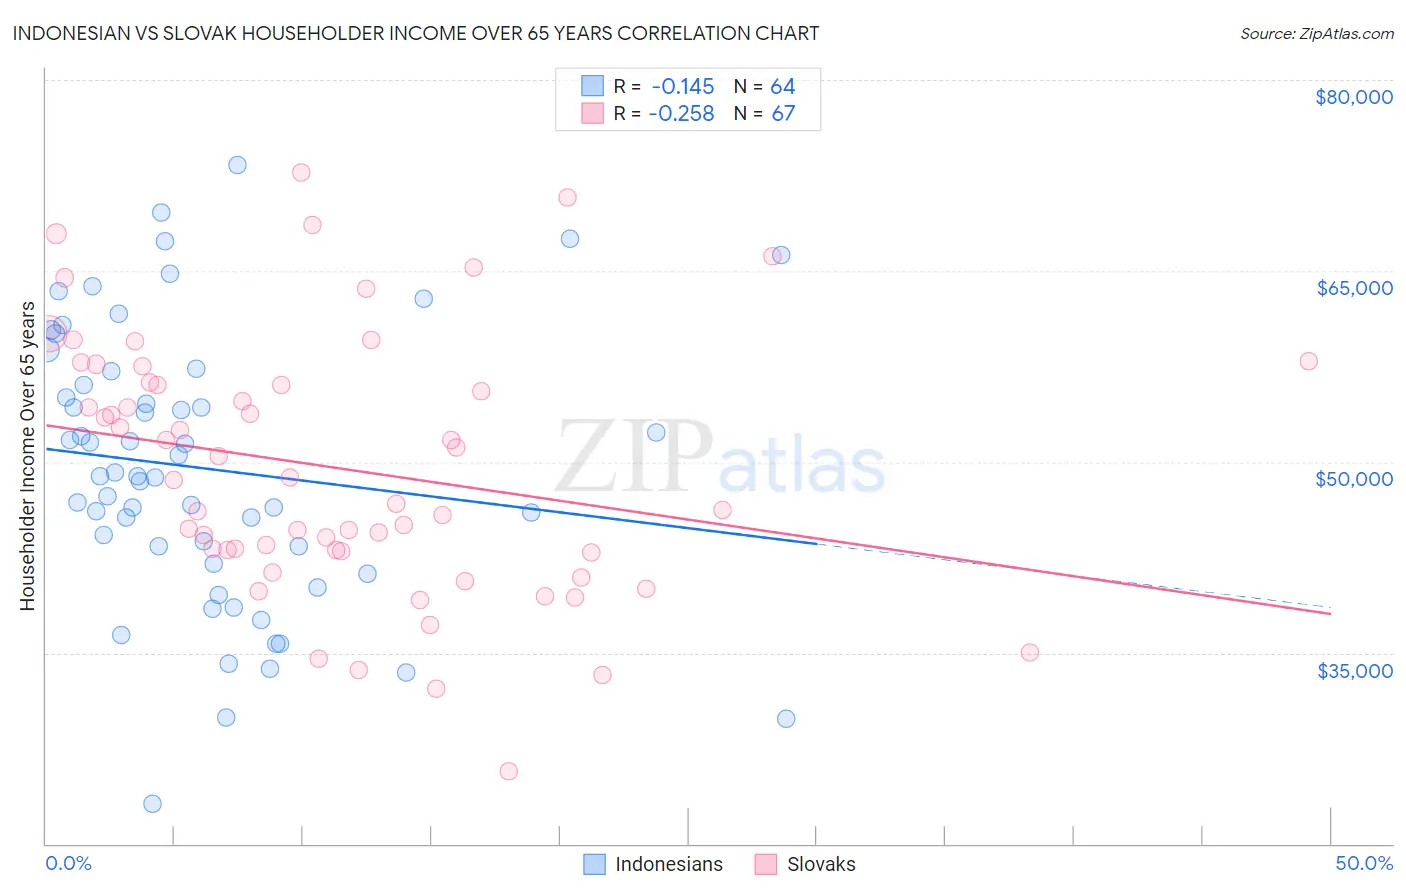 Indonesian vs Slovak Householder Income Over 65 years